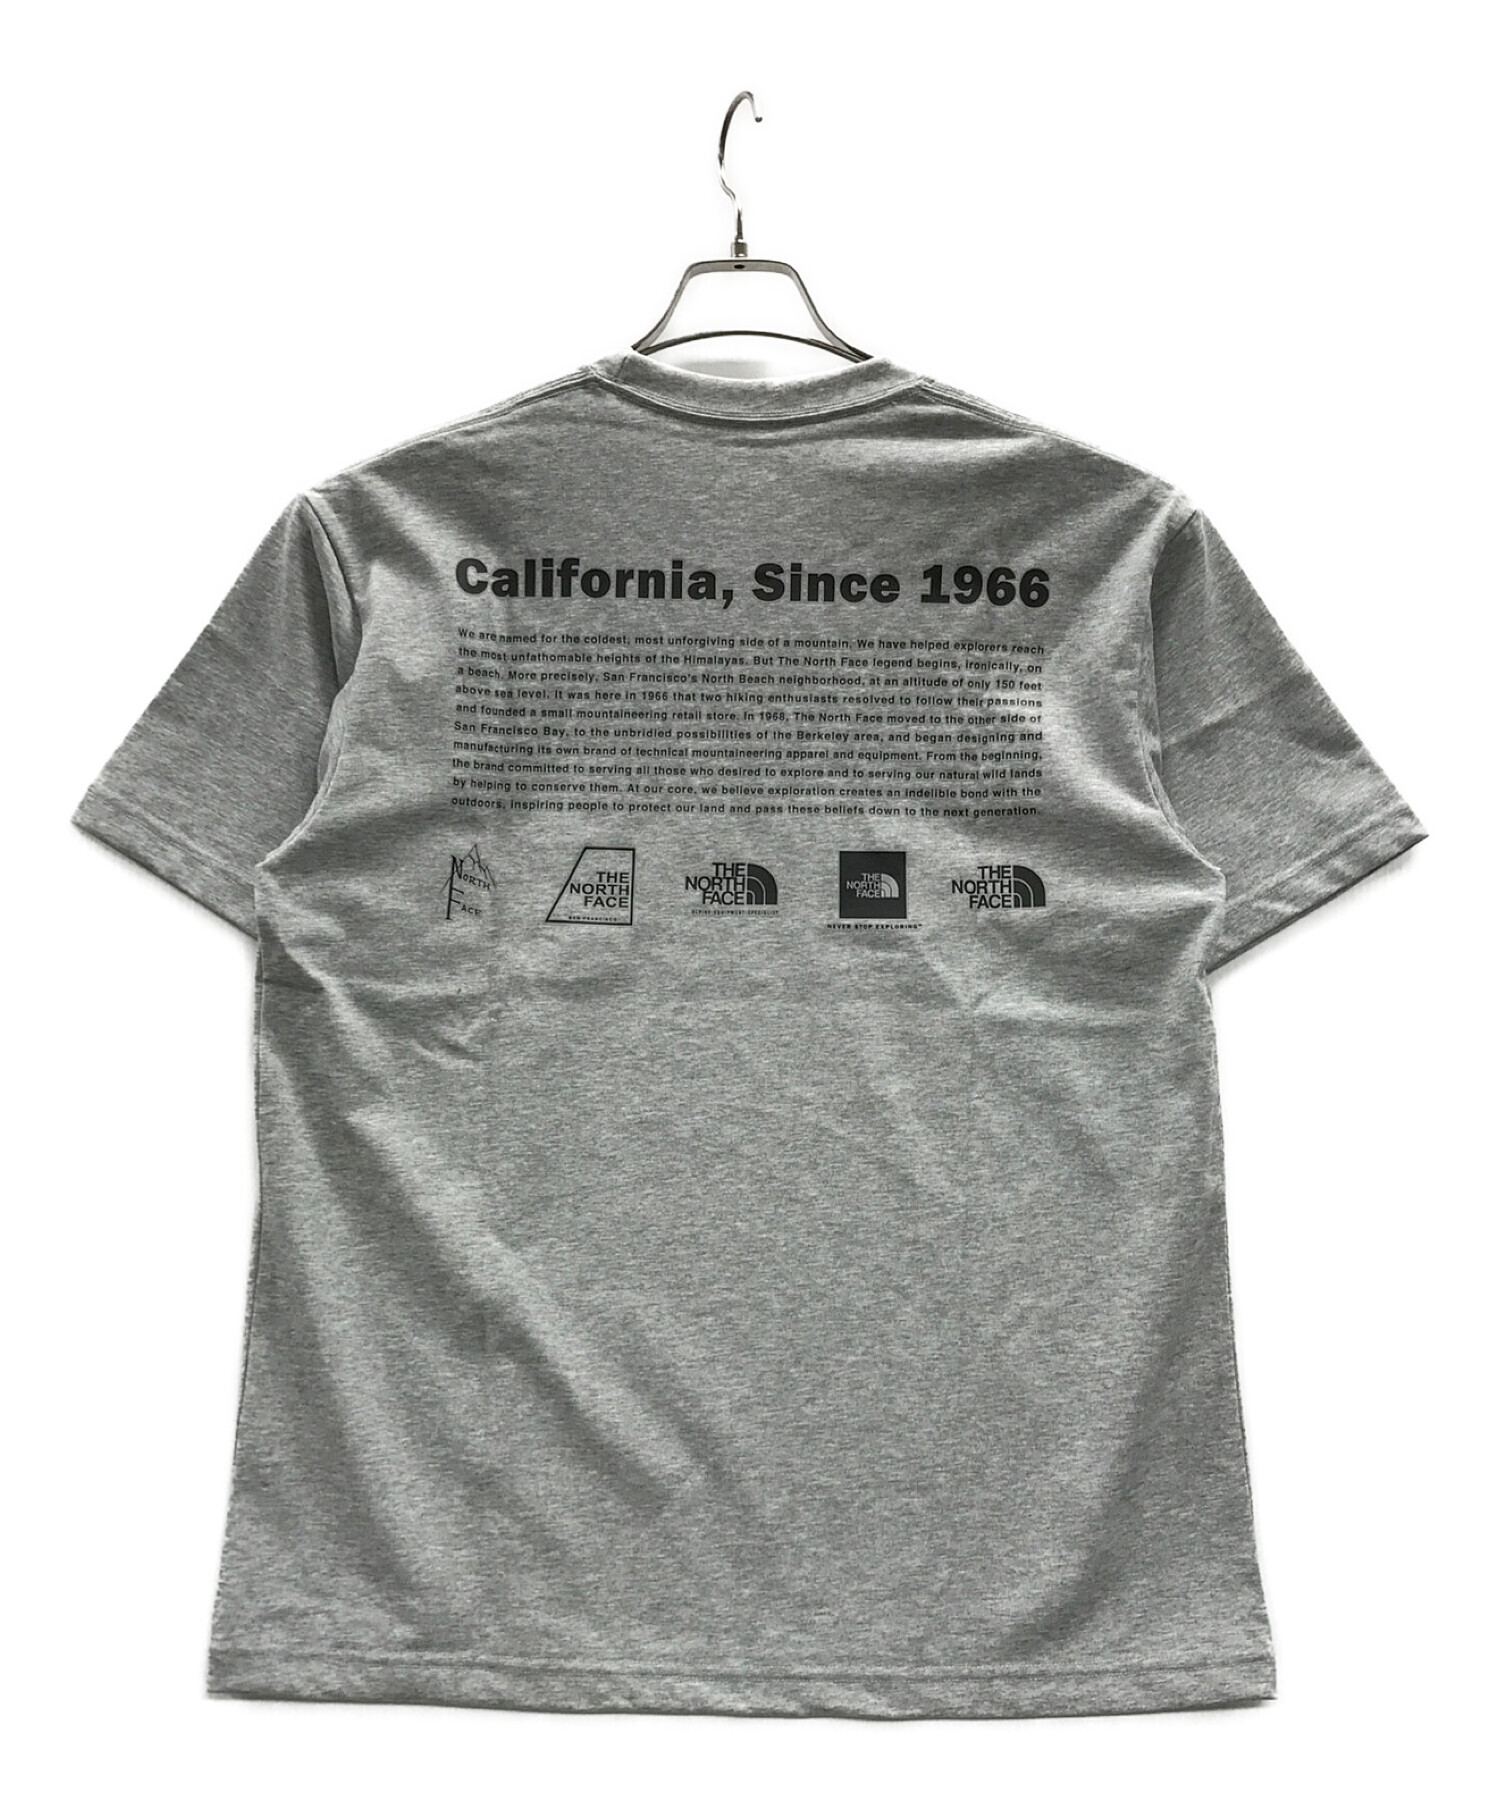 THE NORTH FACE (ザ ノース フェイス) Tシャツ ショートスリーブヒストリカルロゴティー グレー サイズ:L 未使用品